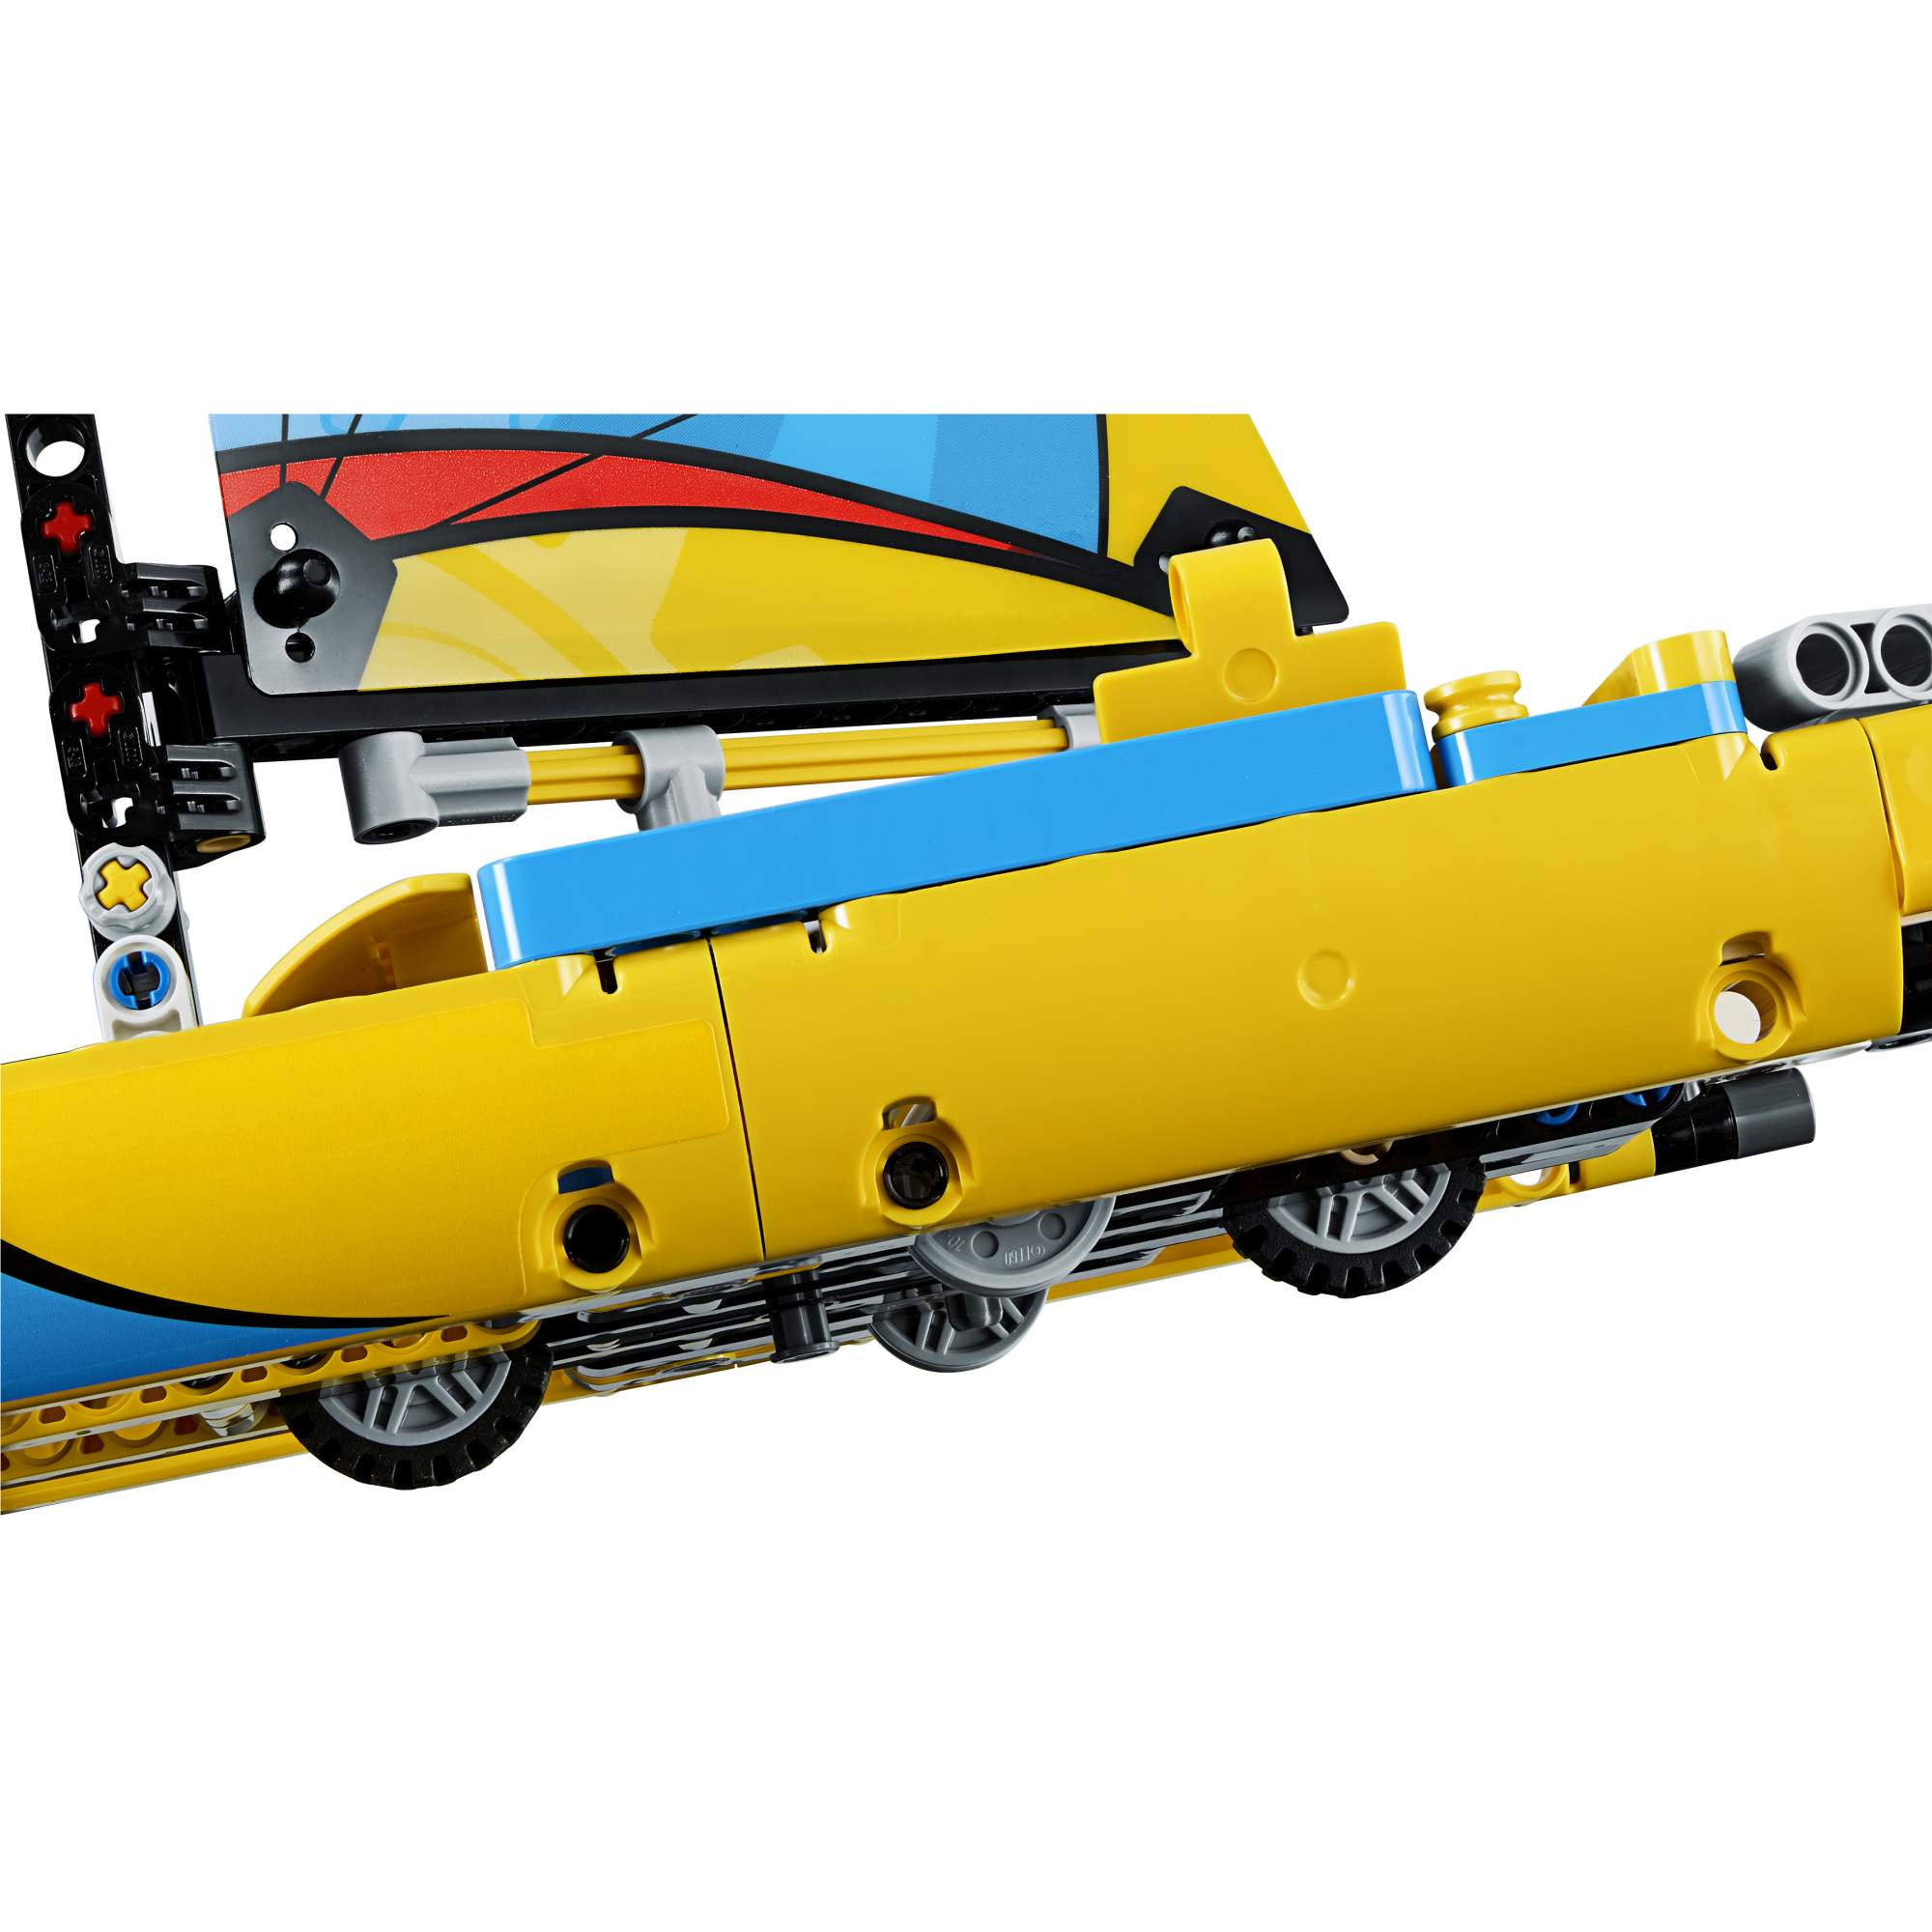 Конструктор LEGO Technic Гоночная яхта (42074)